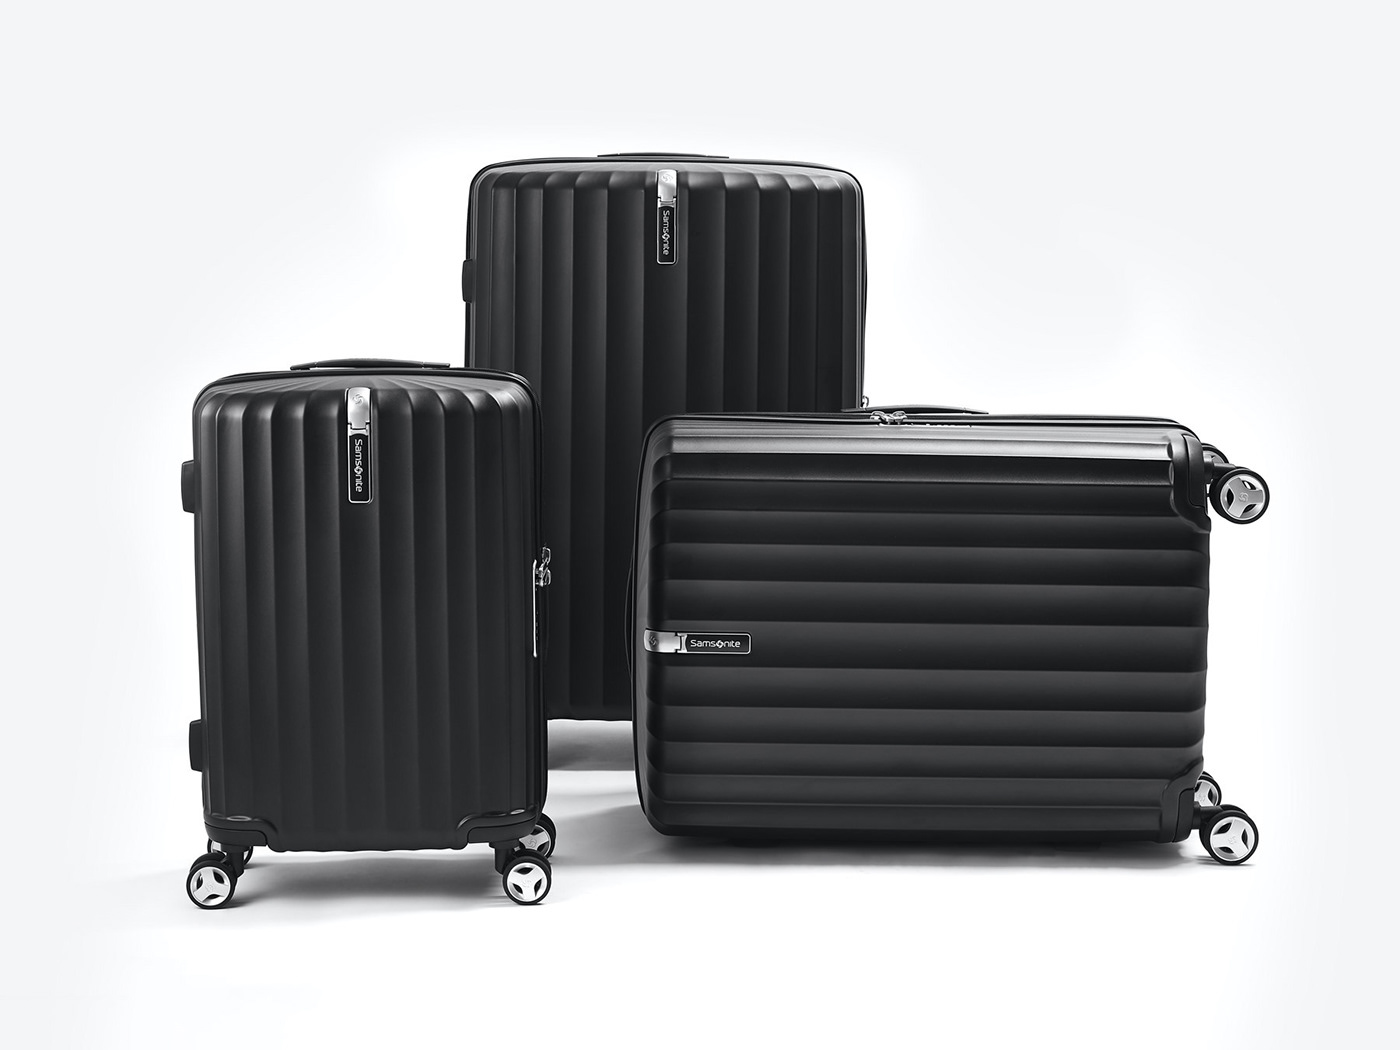 bag cmf industrial design  luggage plane product design  samsonite suitcase texture Travel